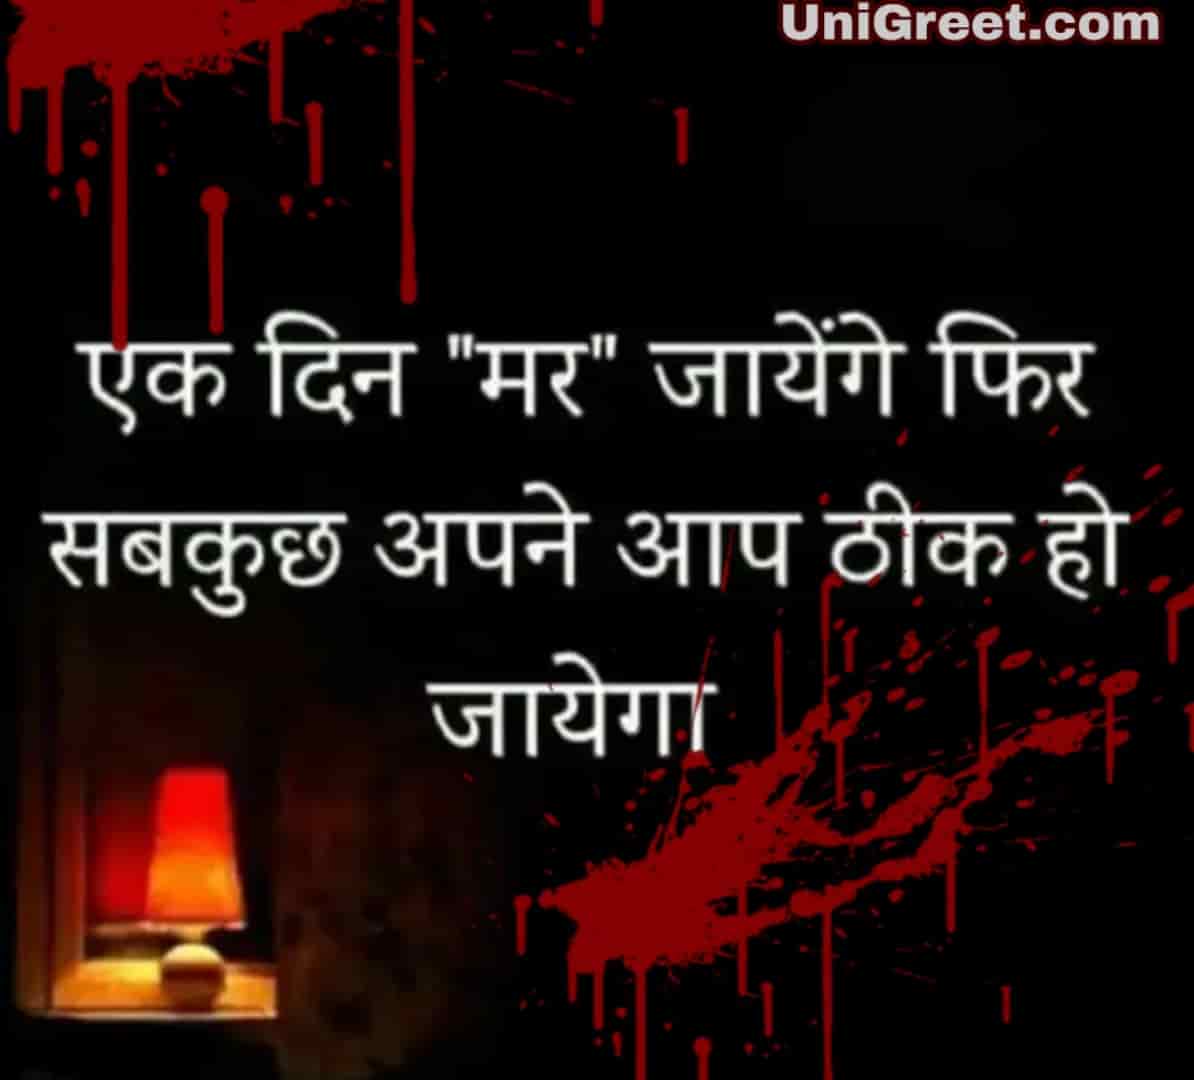 New Very Sad Shayari Images WhatsApp Dp Sad Hindi Shayari Status Pic